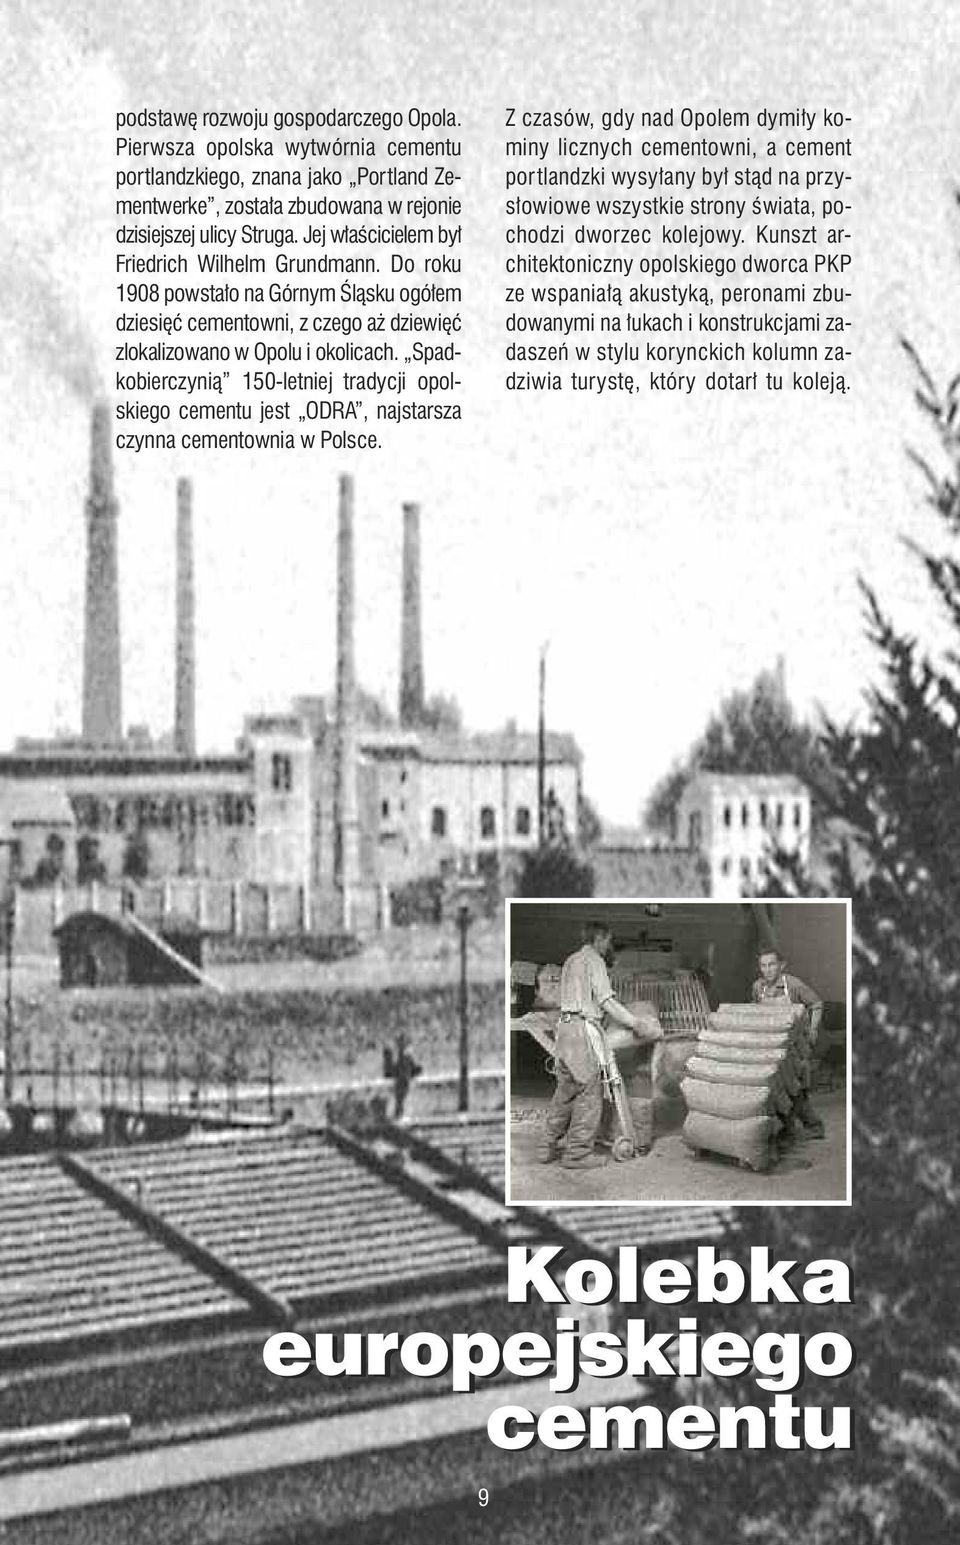 Spadkobierczynią 150-letniej tradycji opolskiego cementu jest ODRA, najstarsza czynna cementownia w Polsce.